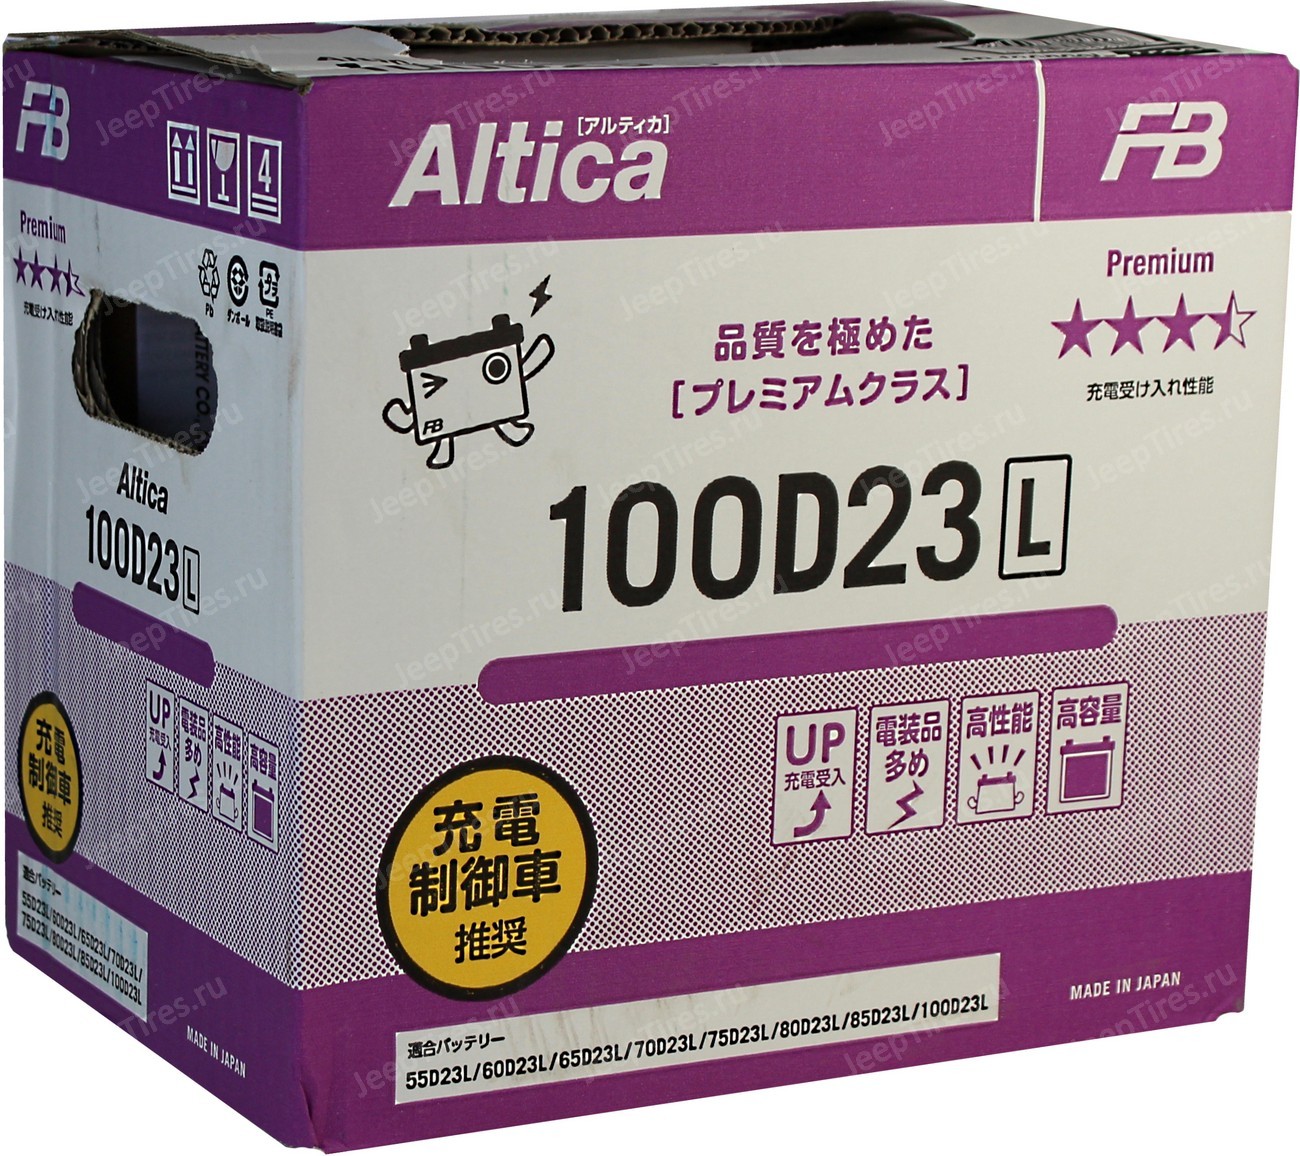 125d26l Furukawa Altica Premium. Fb Altica Premium 6ст-75 100d23r. Furukawa battery altica